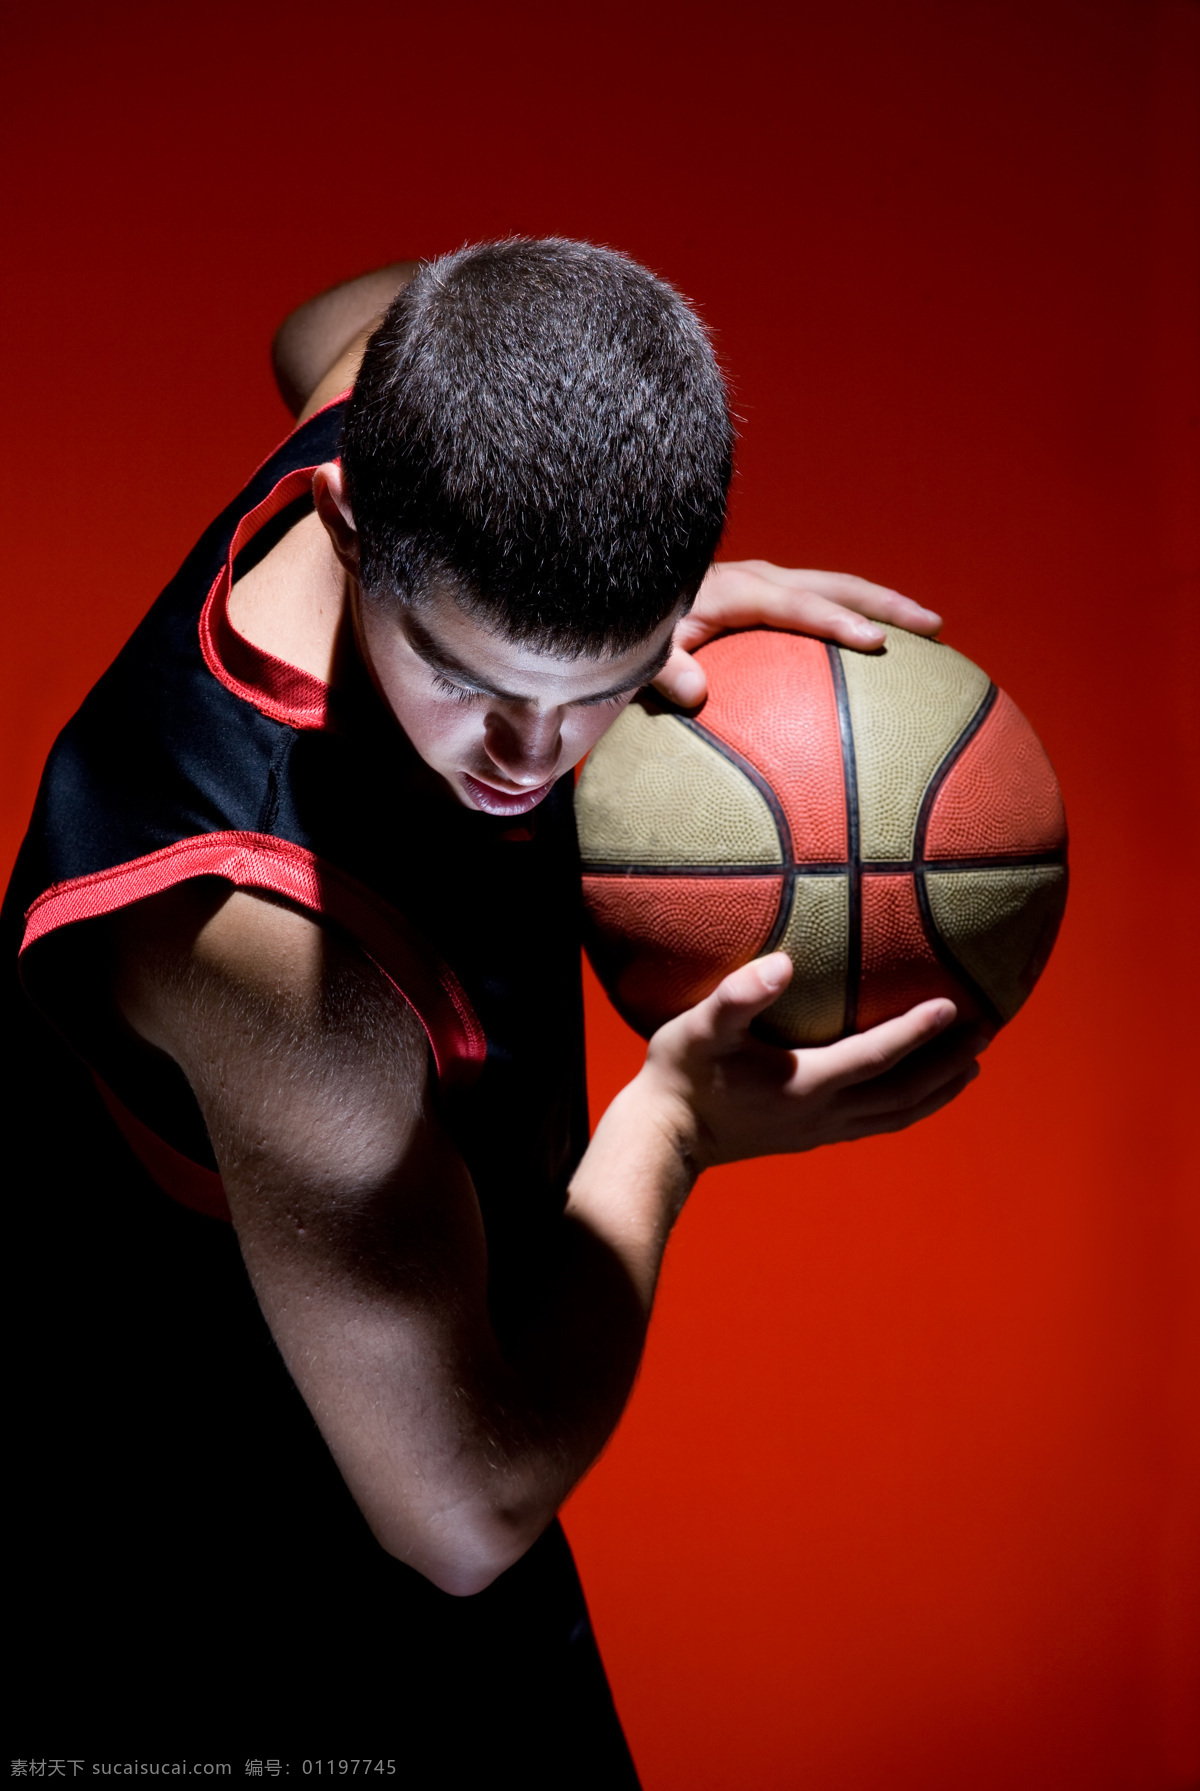 手 篮球 运动员 比赛 人物 男人 体育 运动 人物摄影 职业人物 时尚人物 生活人物 健身 体育运动 生活百科